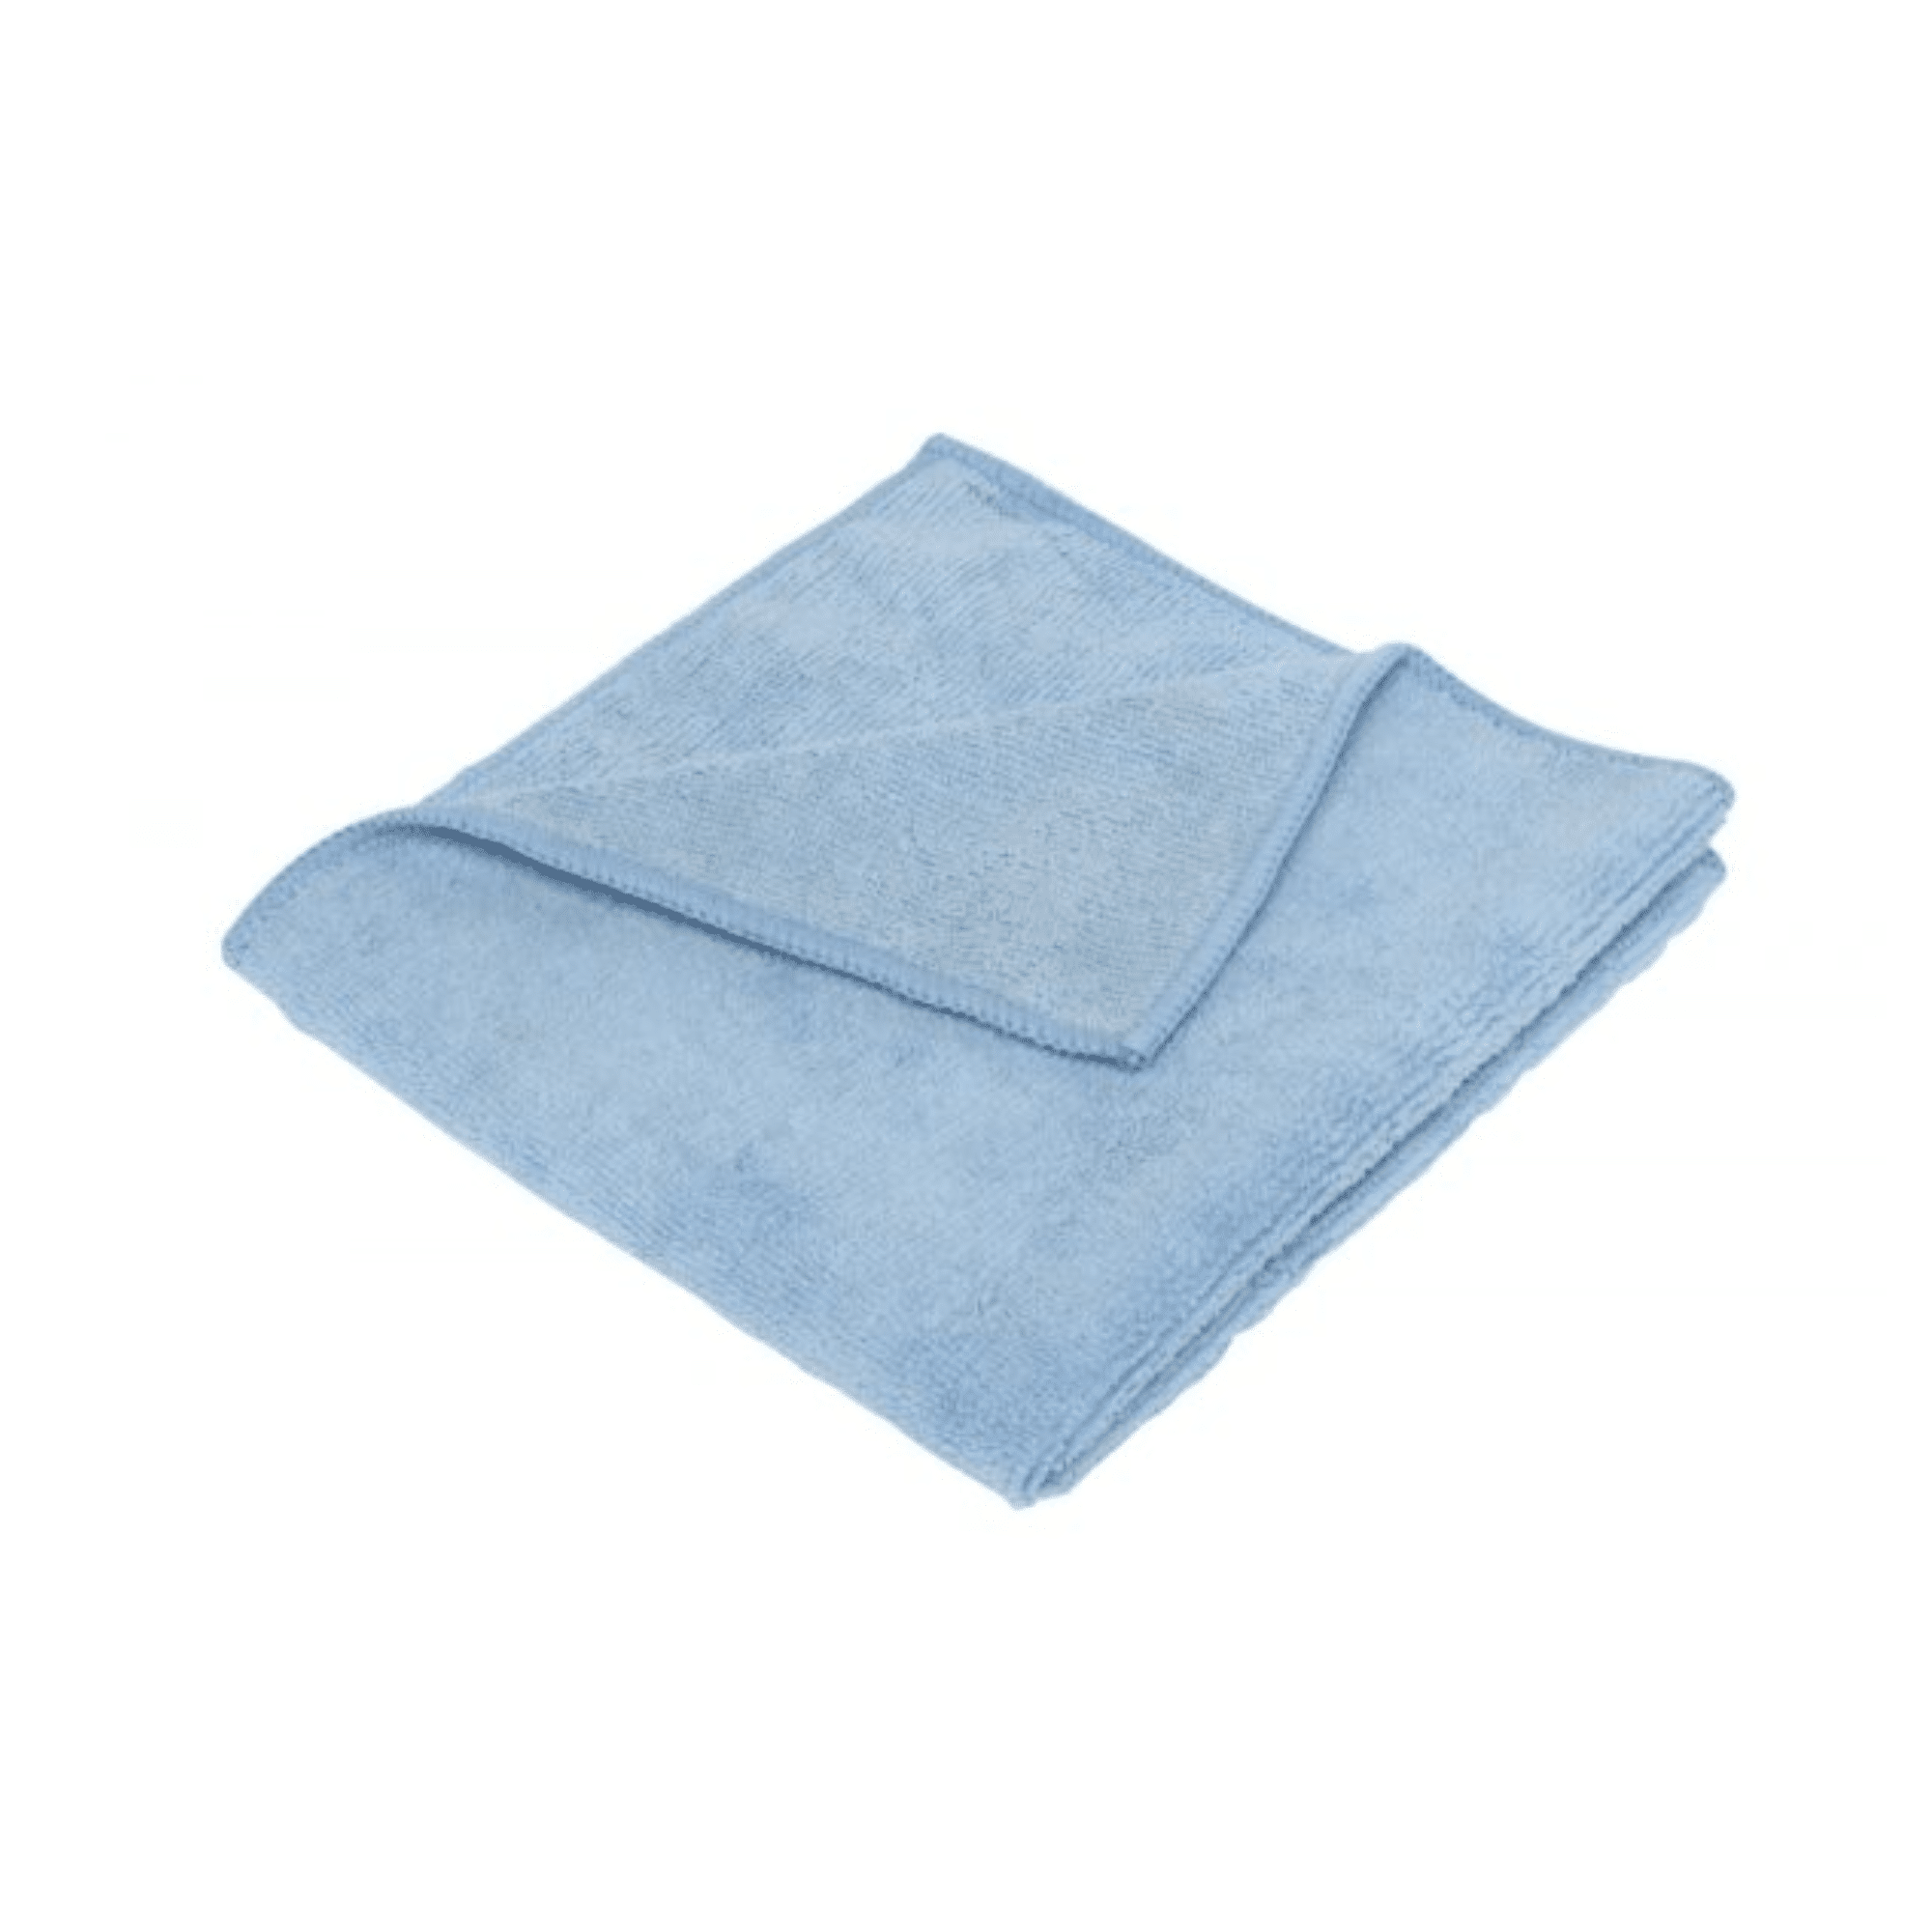 Tuf Microfibre Cloth Blue – EACH